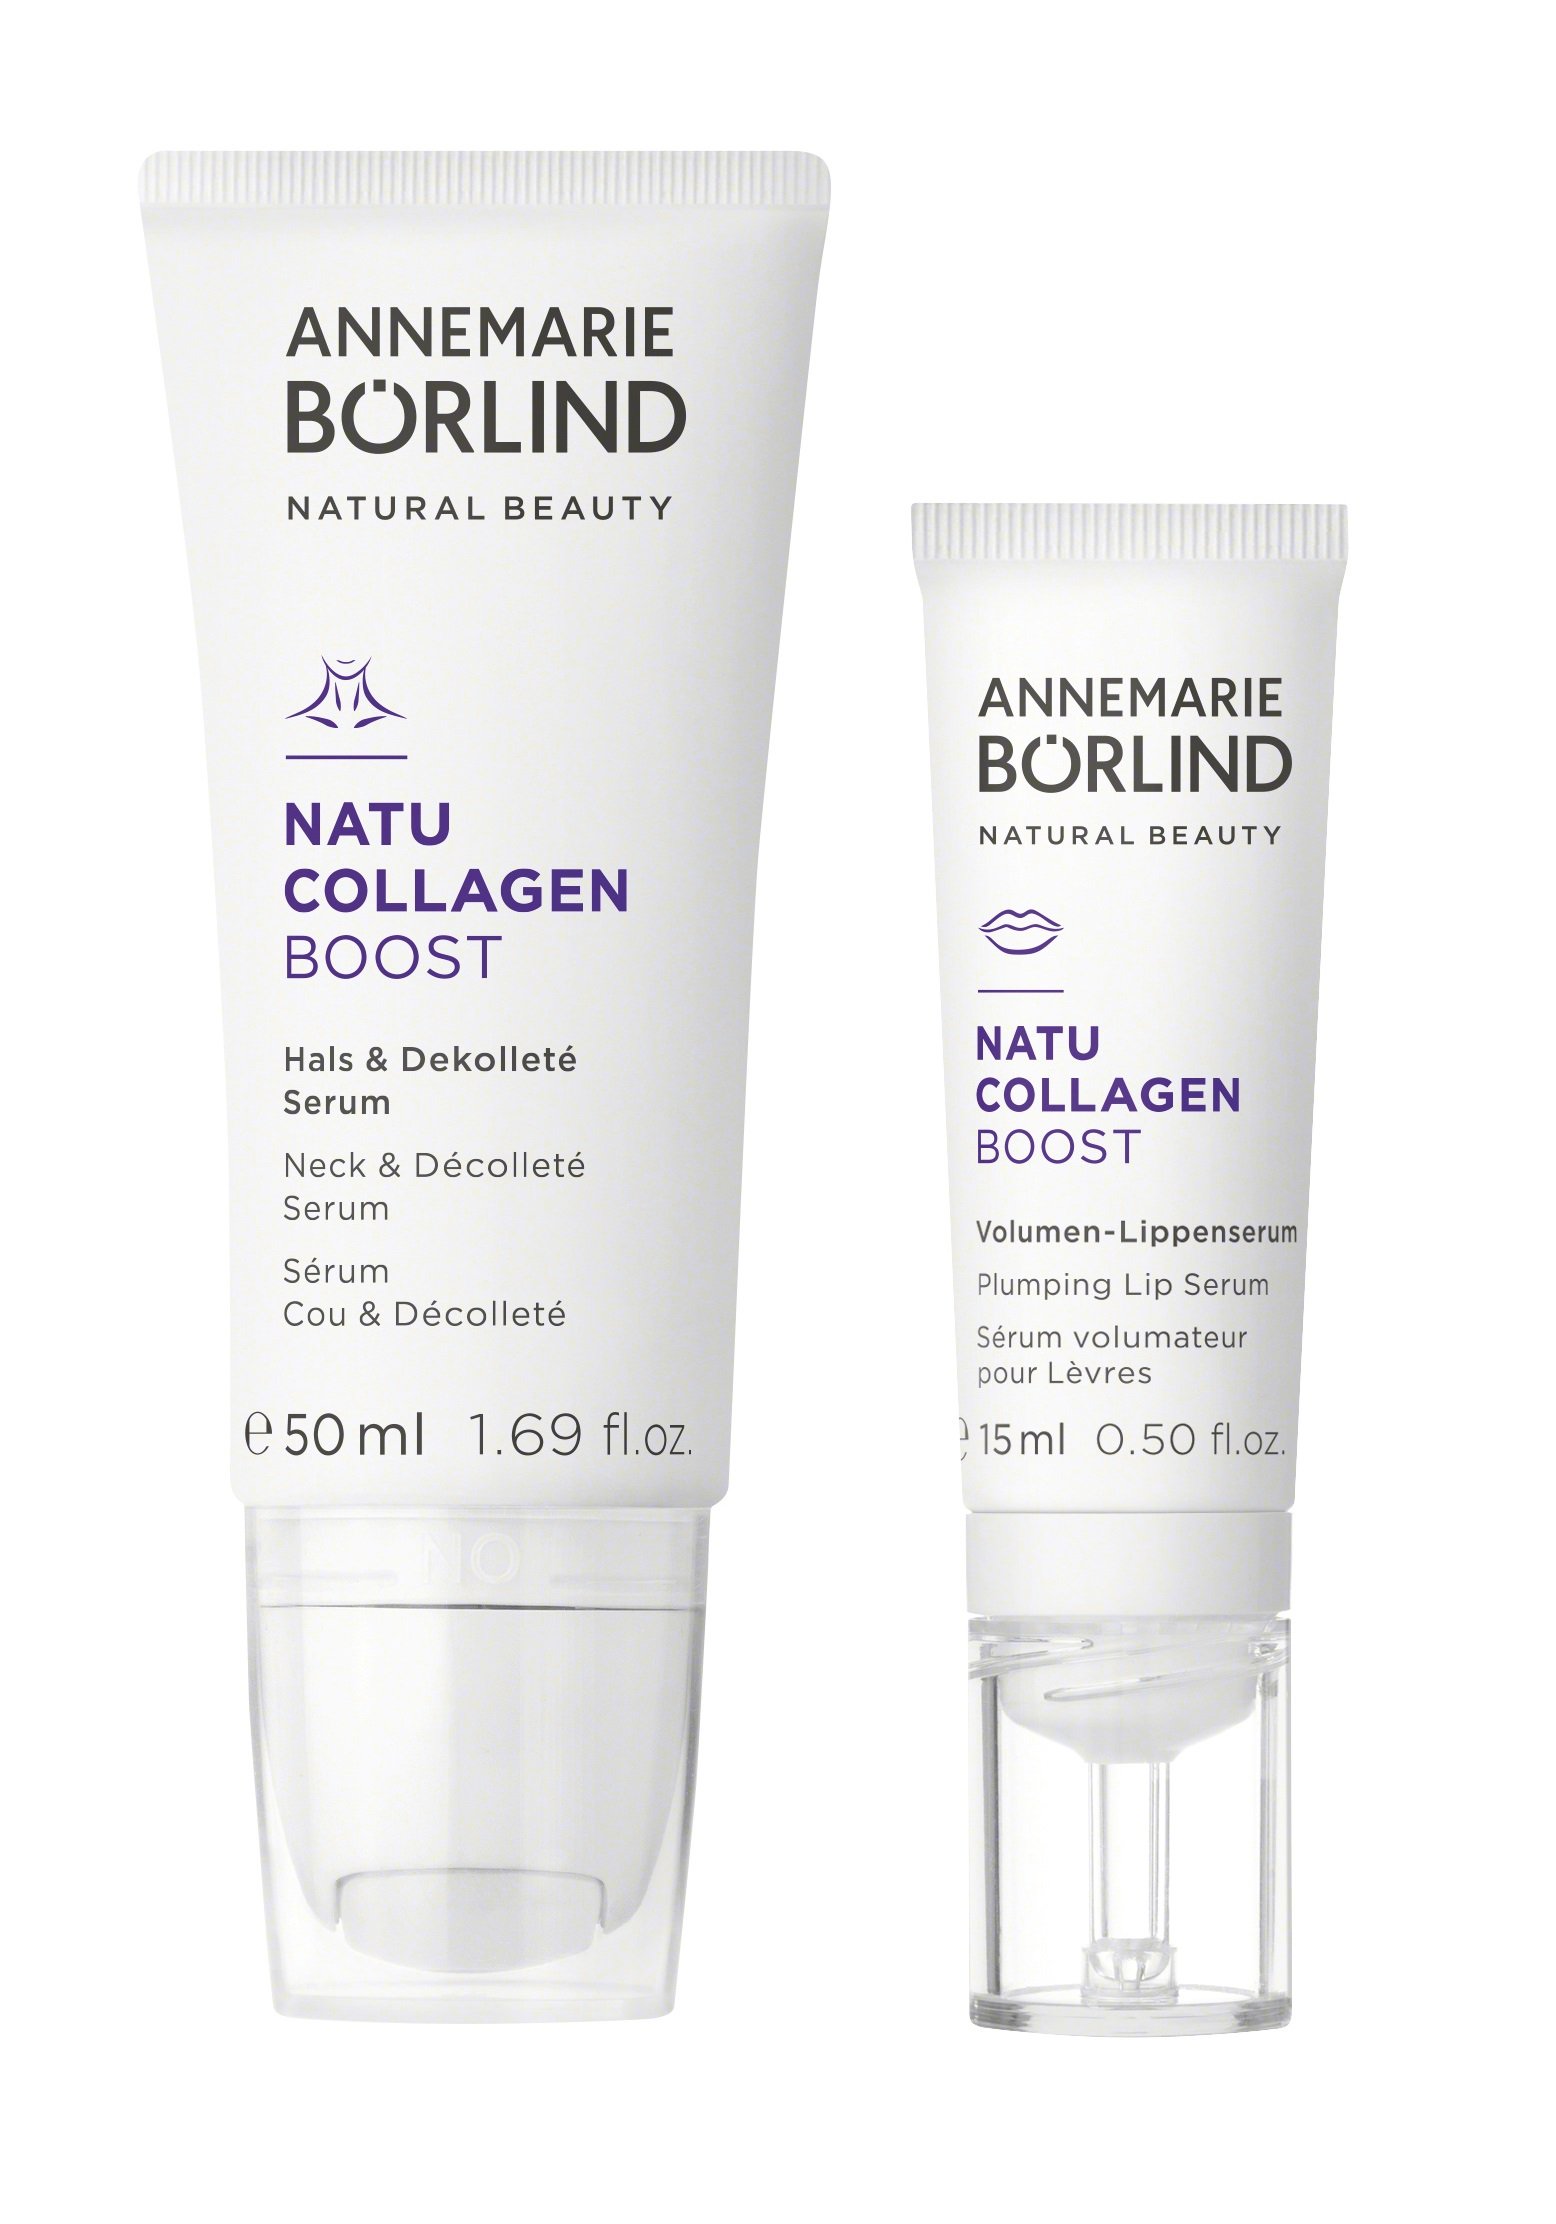 Annemarie Börlind – Natu Collagen Neck & Décolleté Serum 50 ml + Annemarie Börlind – Natu Collagen Plumping Lip Serum 15 ml